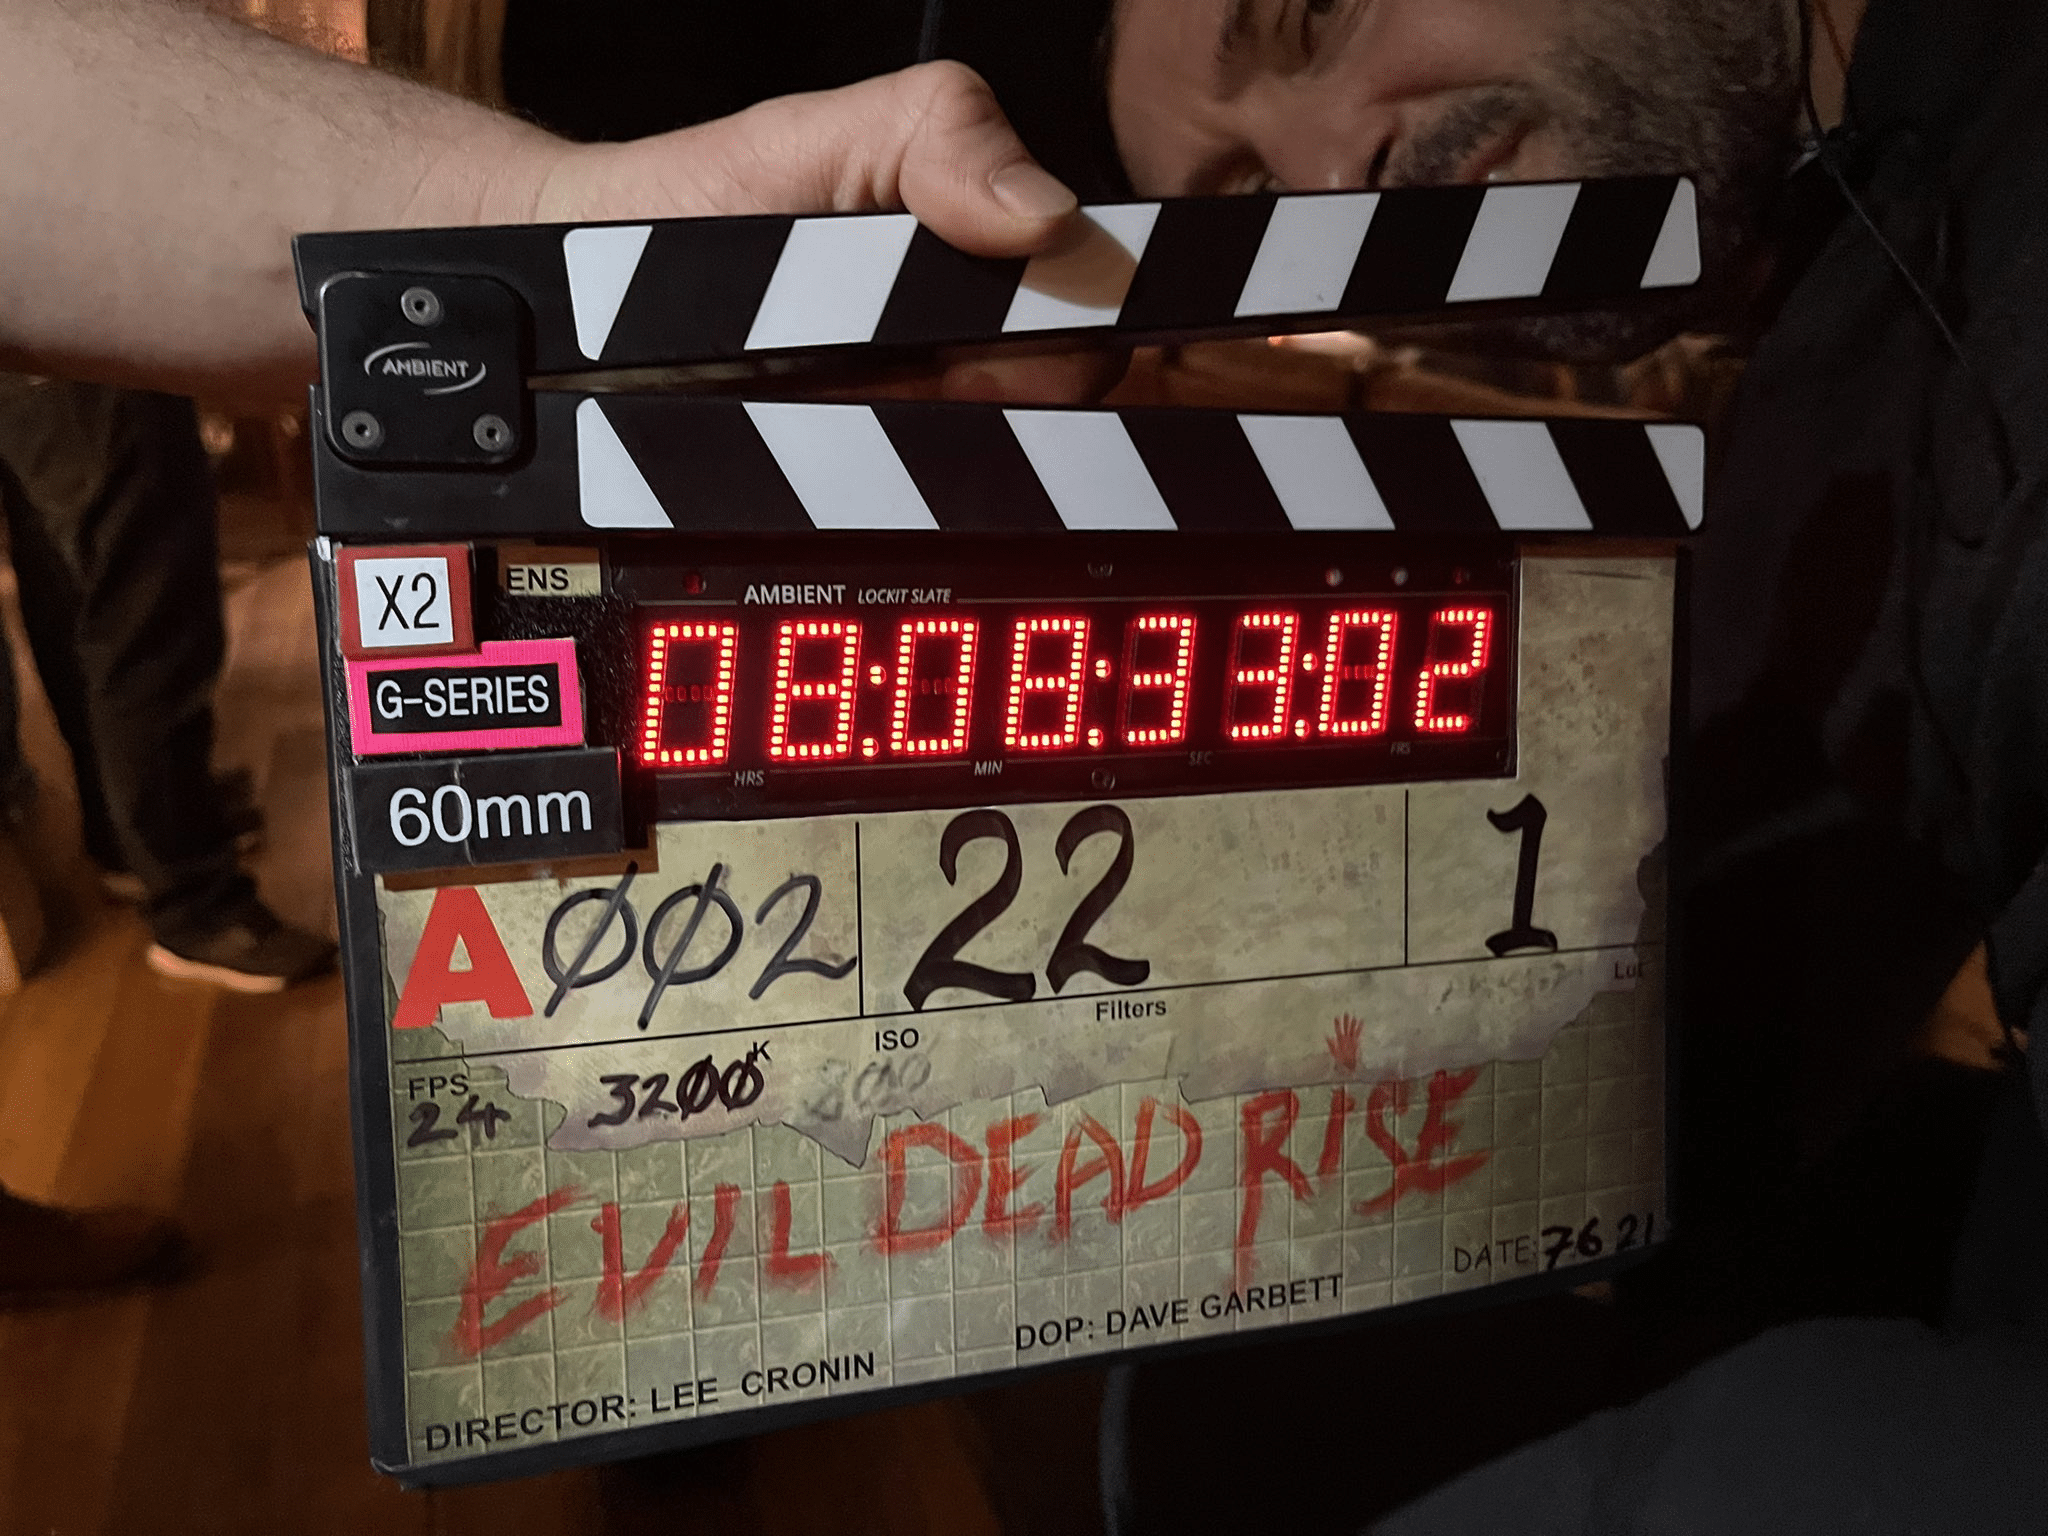 Gravações de Evil Dead Rise, próximo filme da franquia, já começaram